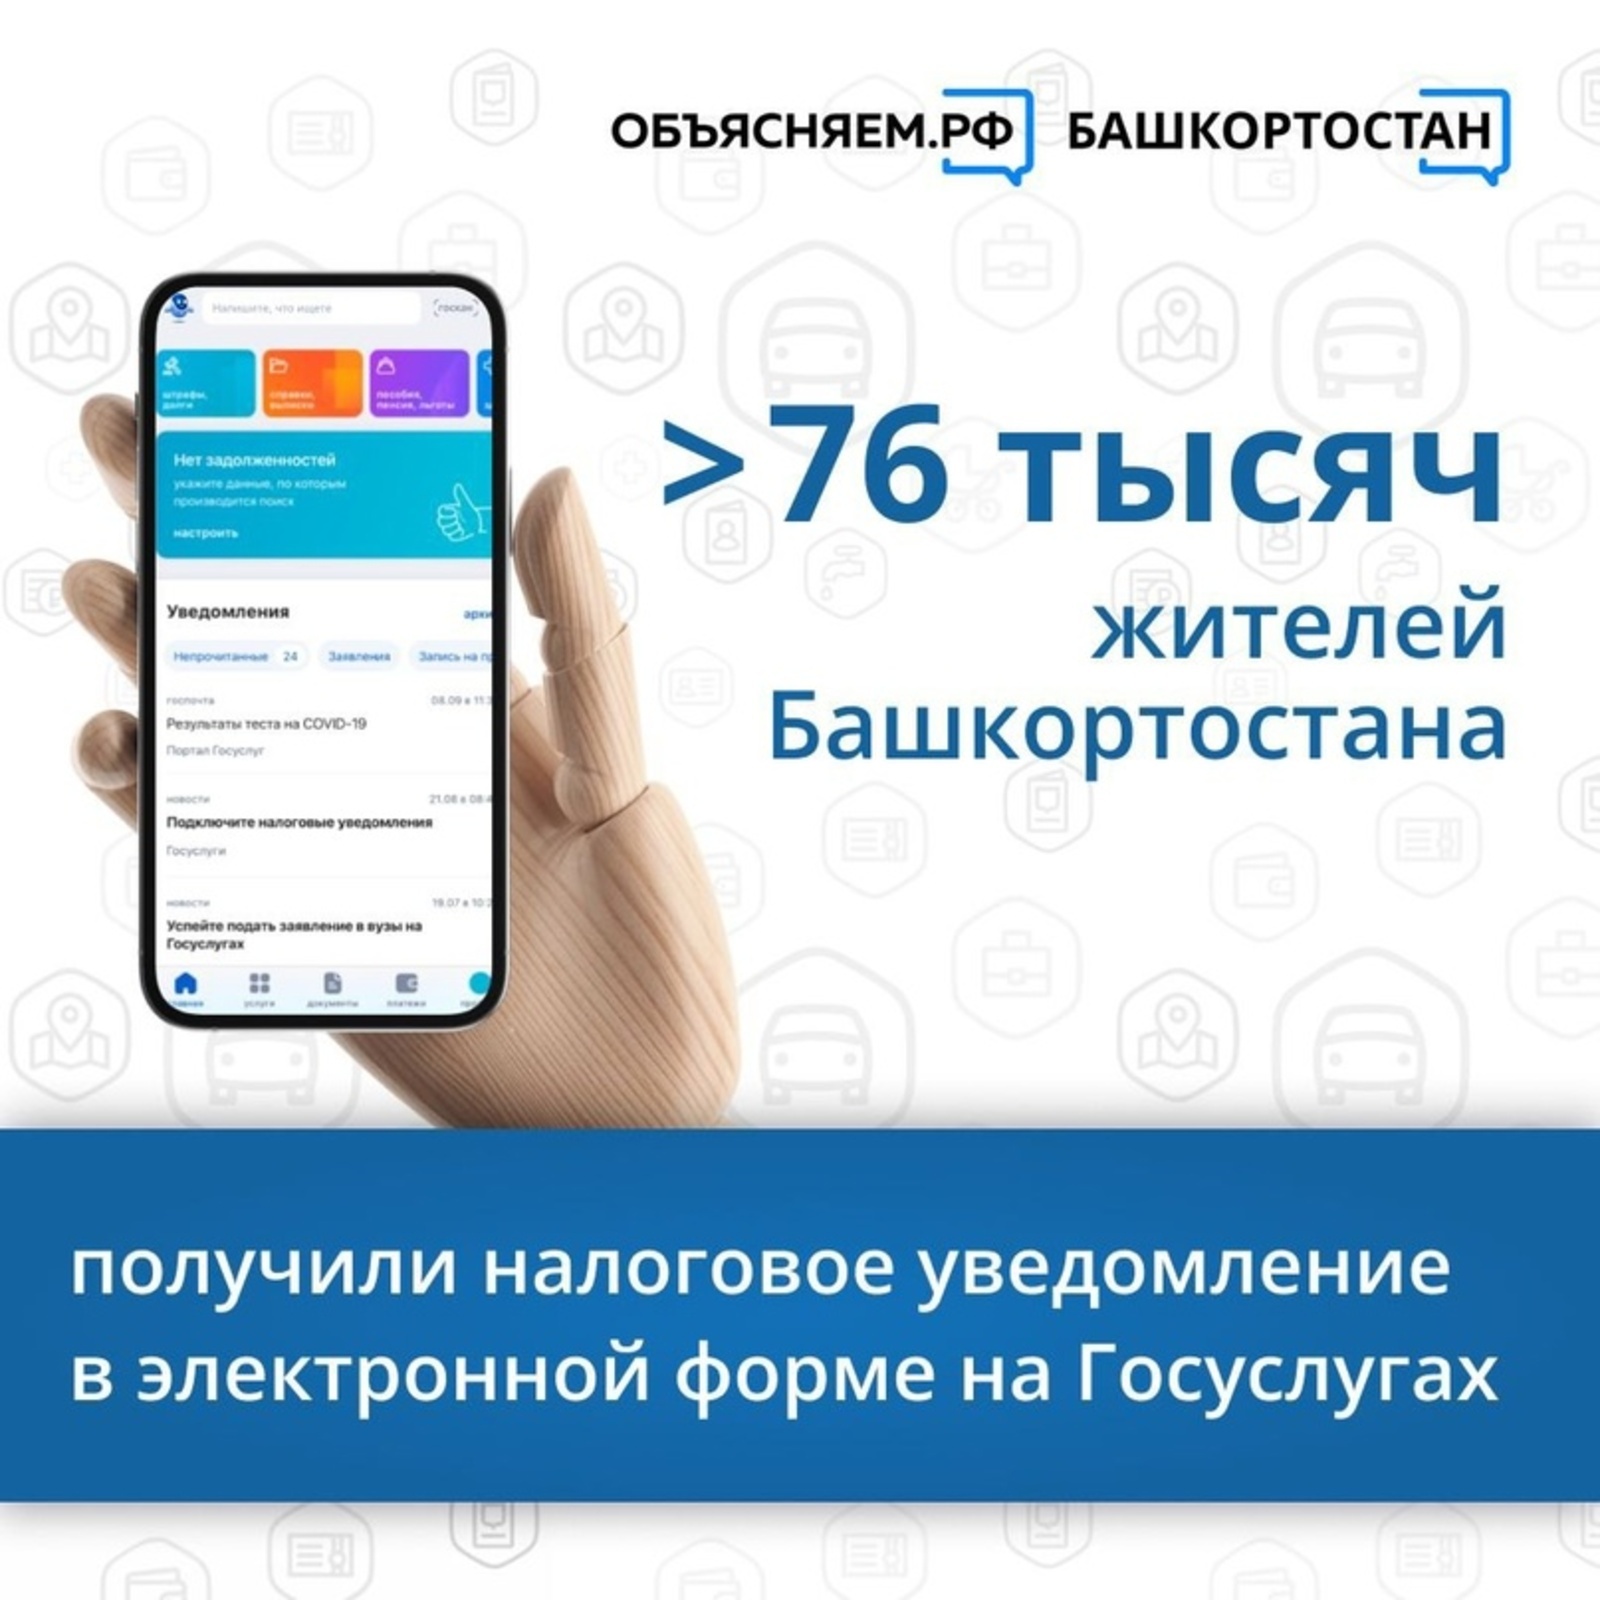 Более 76 тысяч жителей Башкортостана получили налоговое уведомление в электронной форме на Госуслугах